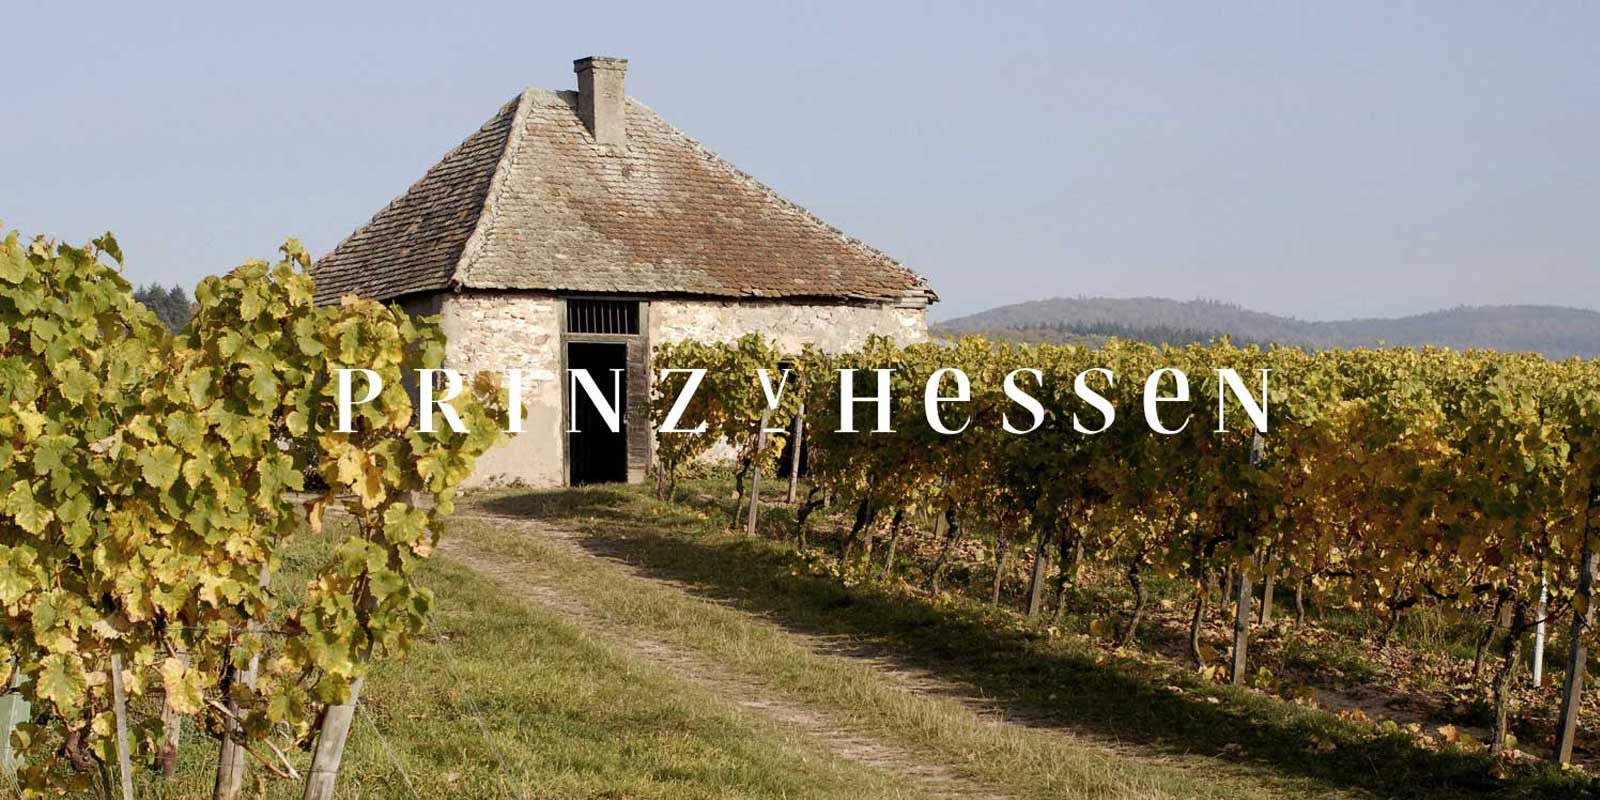 Pabrik anggur Prince of Hesse - wilayah penghasil anggur Rheingau Pabrik anggur PRINZ VON HESSEN di Johannisberg di Rheingau adalah salah satu produsen Riesling terkemuka di Jerman dan merupakan anggota pendiri VDP dari asosiasi regional Rheingau. Banyaknya pengakuan di dalam dan luar negeri mencerminkan kilang anggur PRINZ VON HESSEN yang berada di level teratas. Anggur dan anggur bersoda dari kilang anggur PRINZ VON HESSEN telah memenangkan banyak penghargaan dan menerima penghargaan internasional yang tinggi.